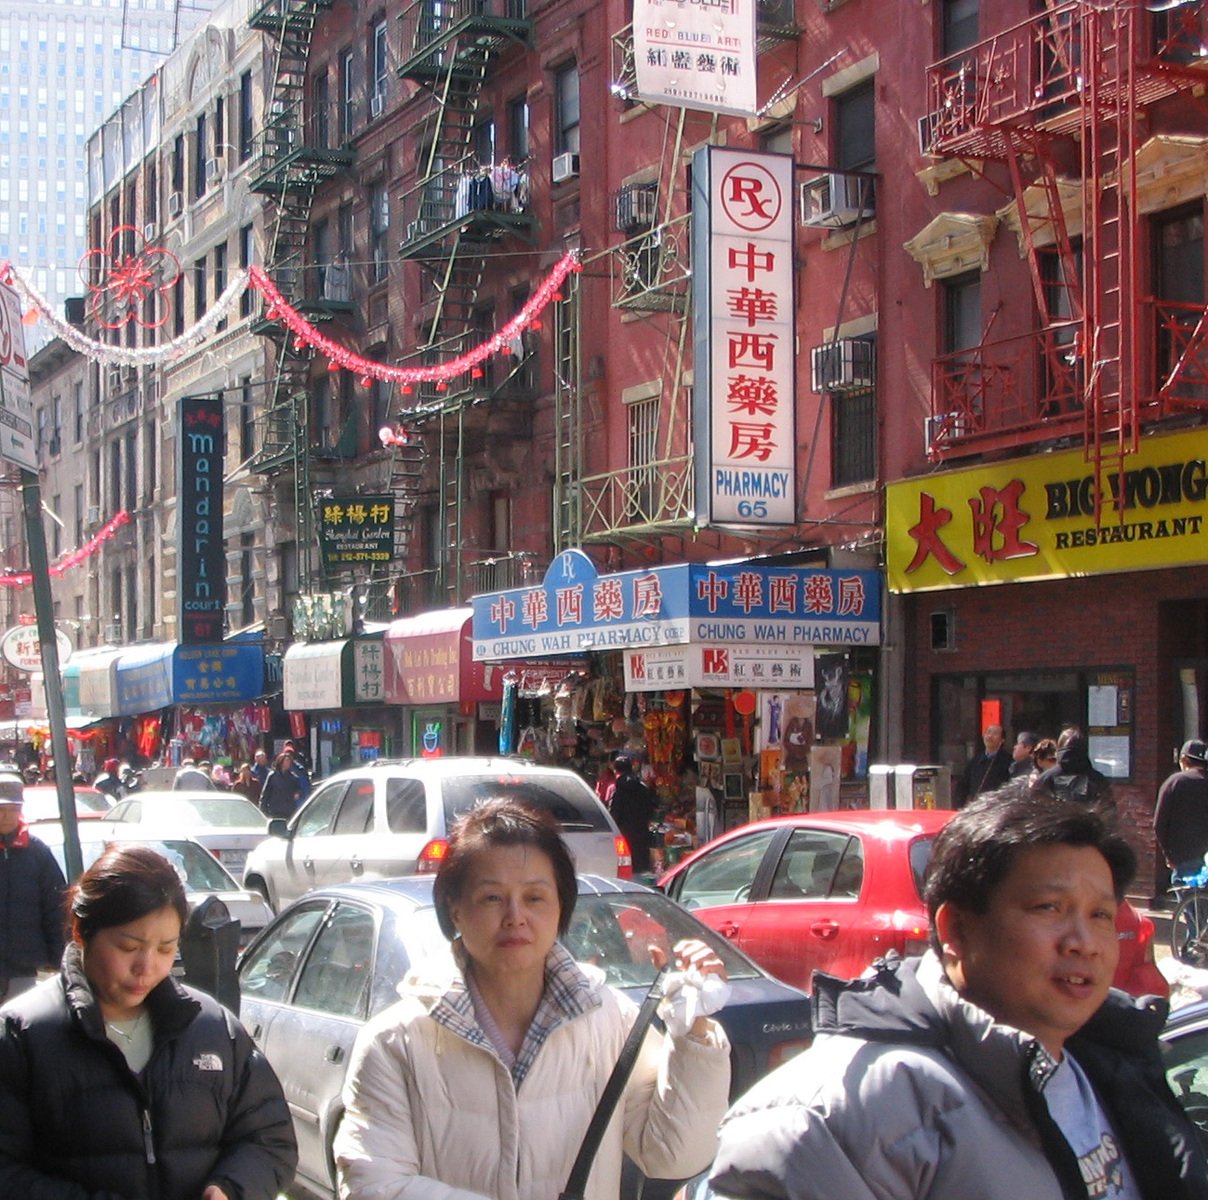 pedestrians in an asian city walk down the street